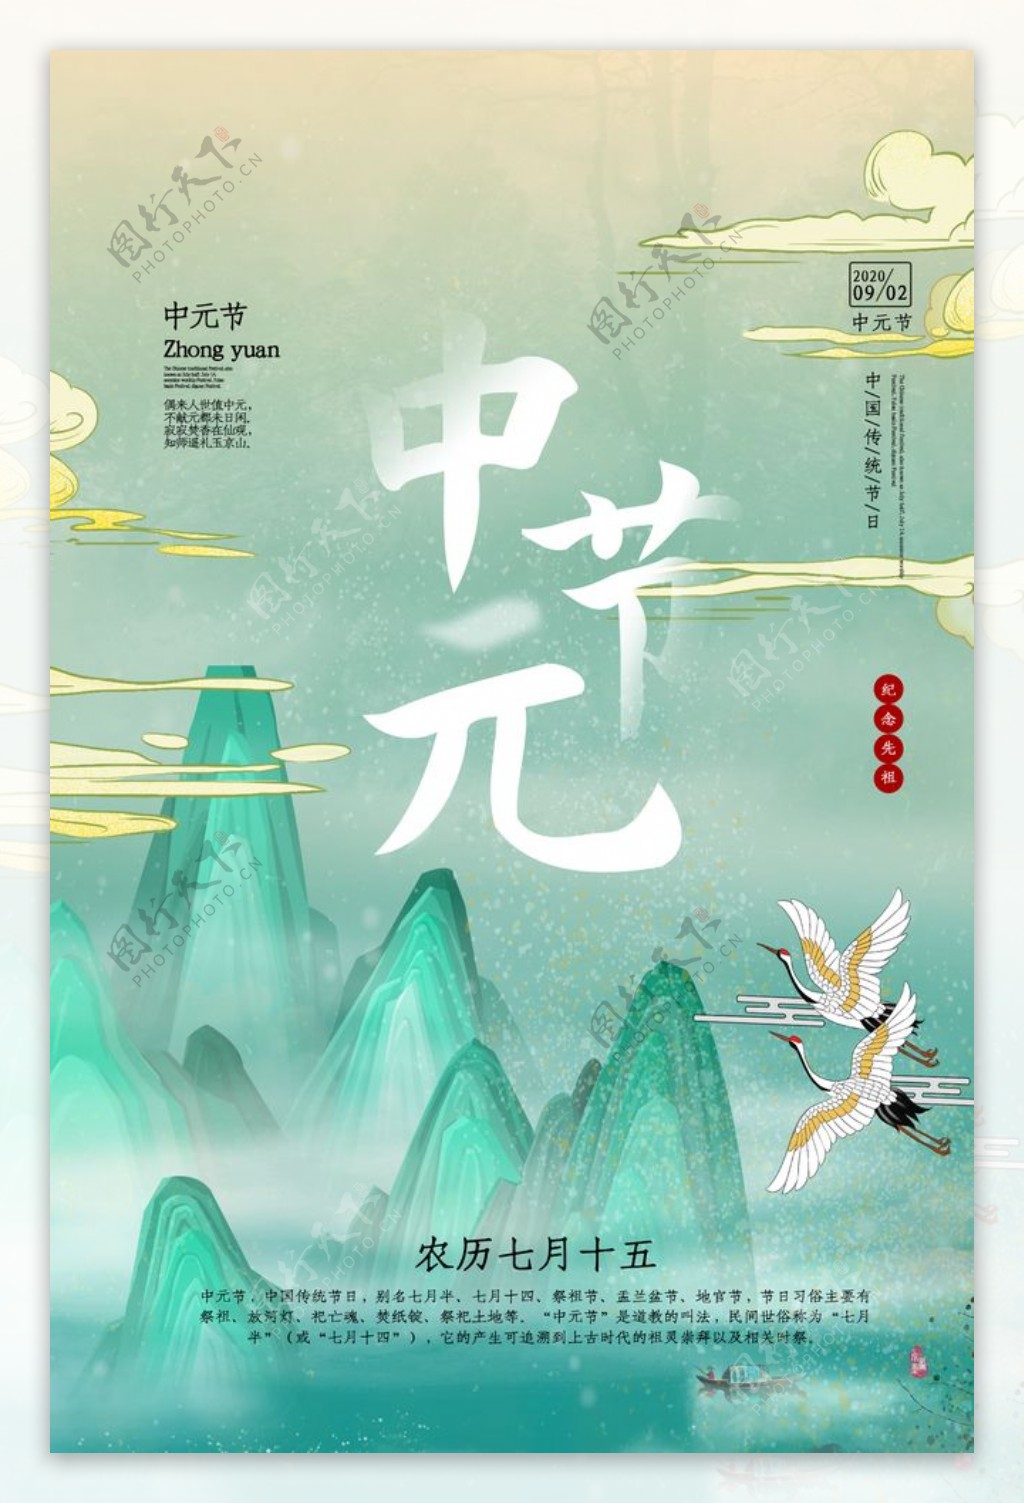 中元节传统节日活动宣传海报